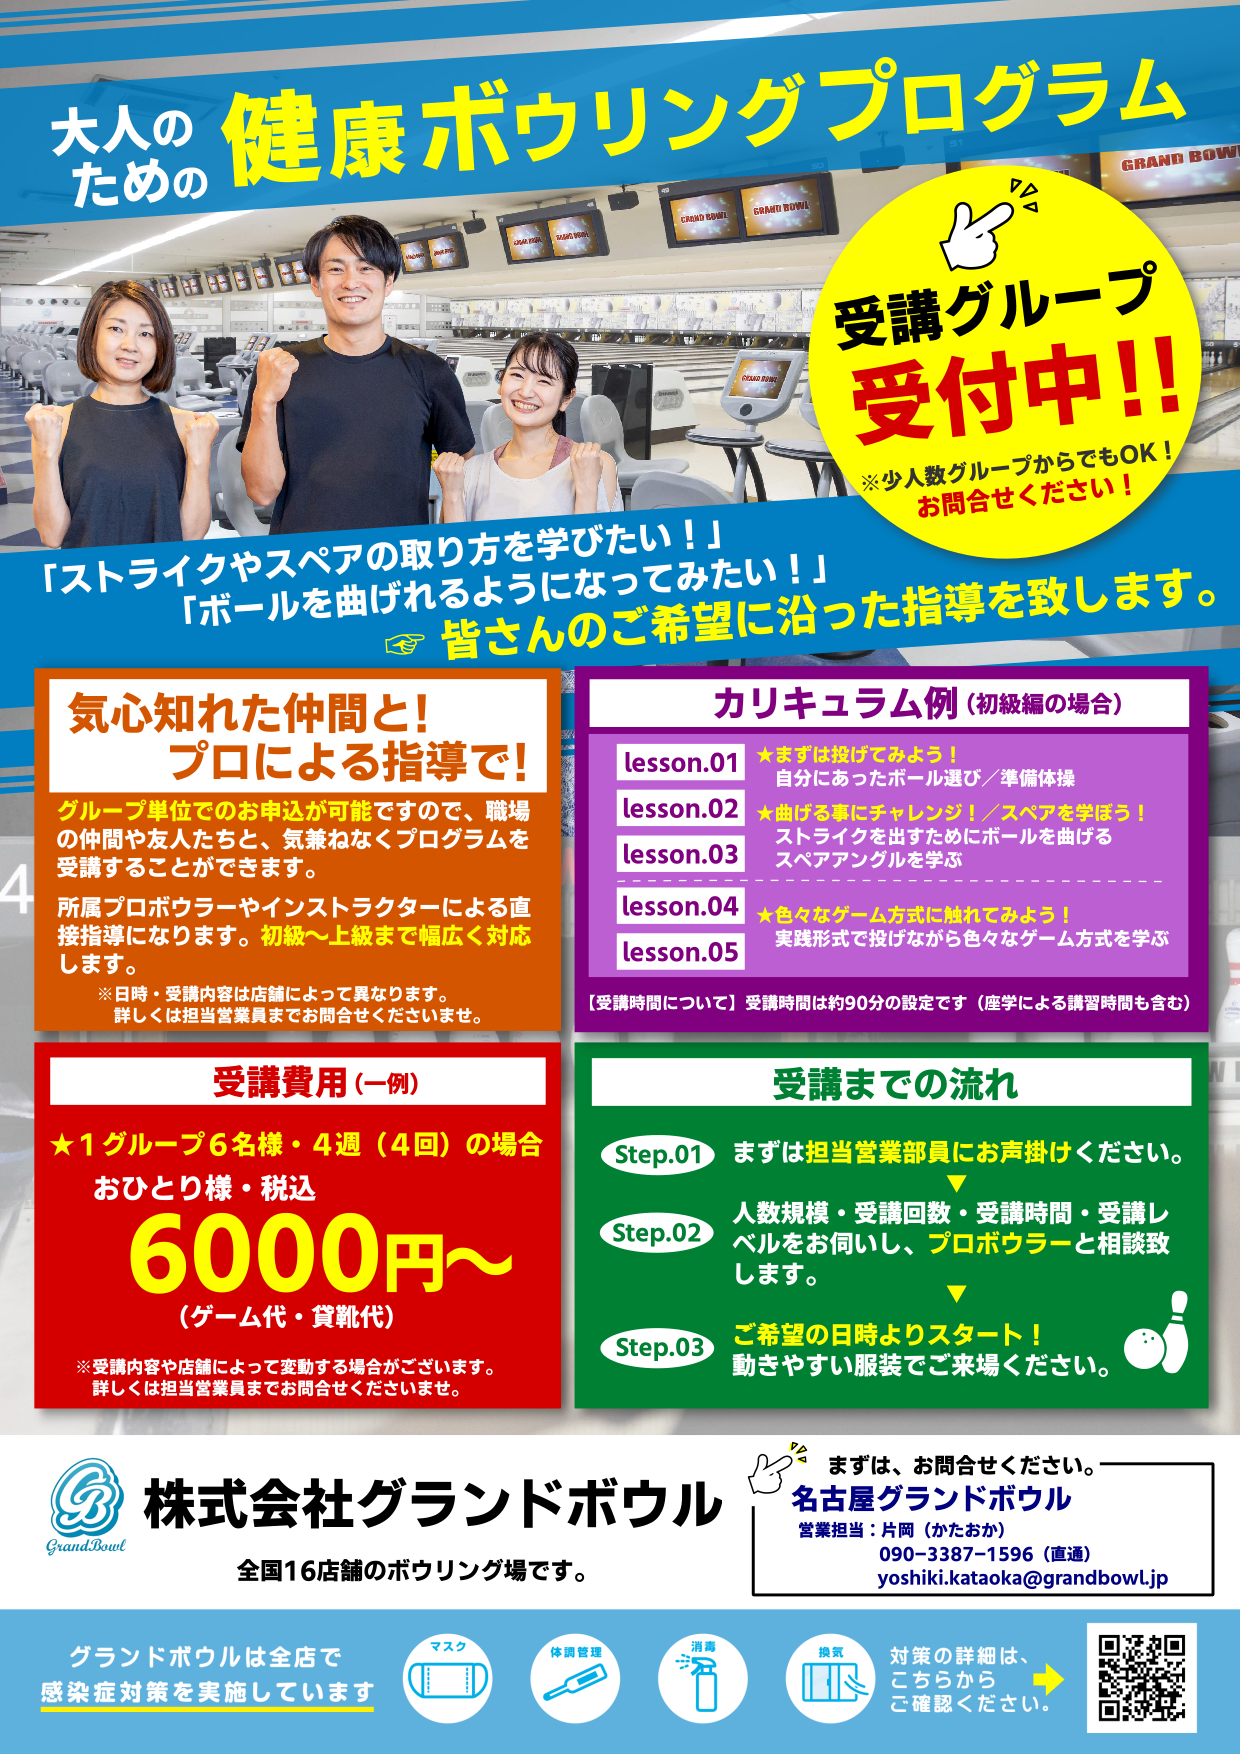 大人のための【健康ボウリングプログラム】 | 名古屋グランドボウル